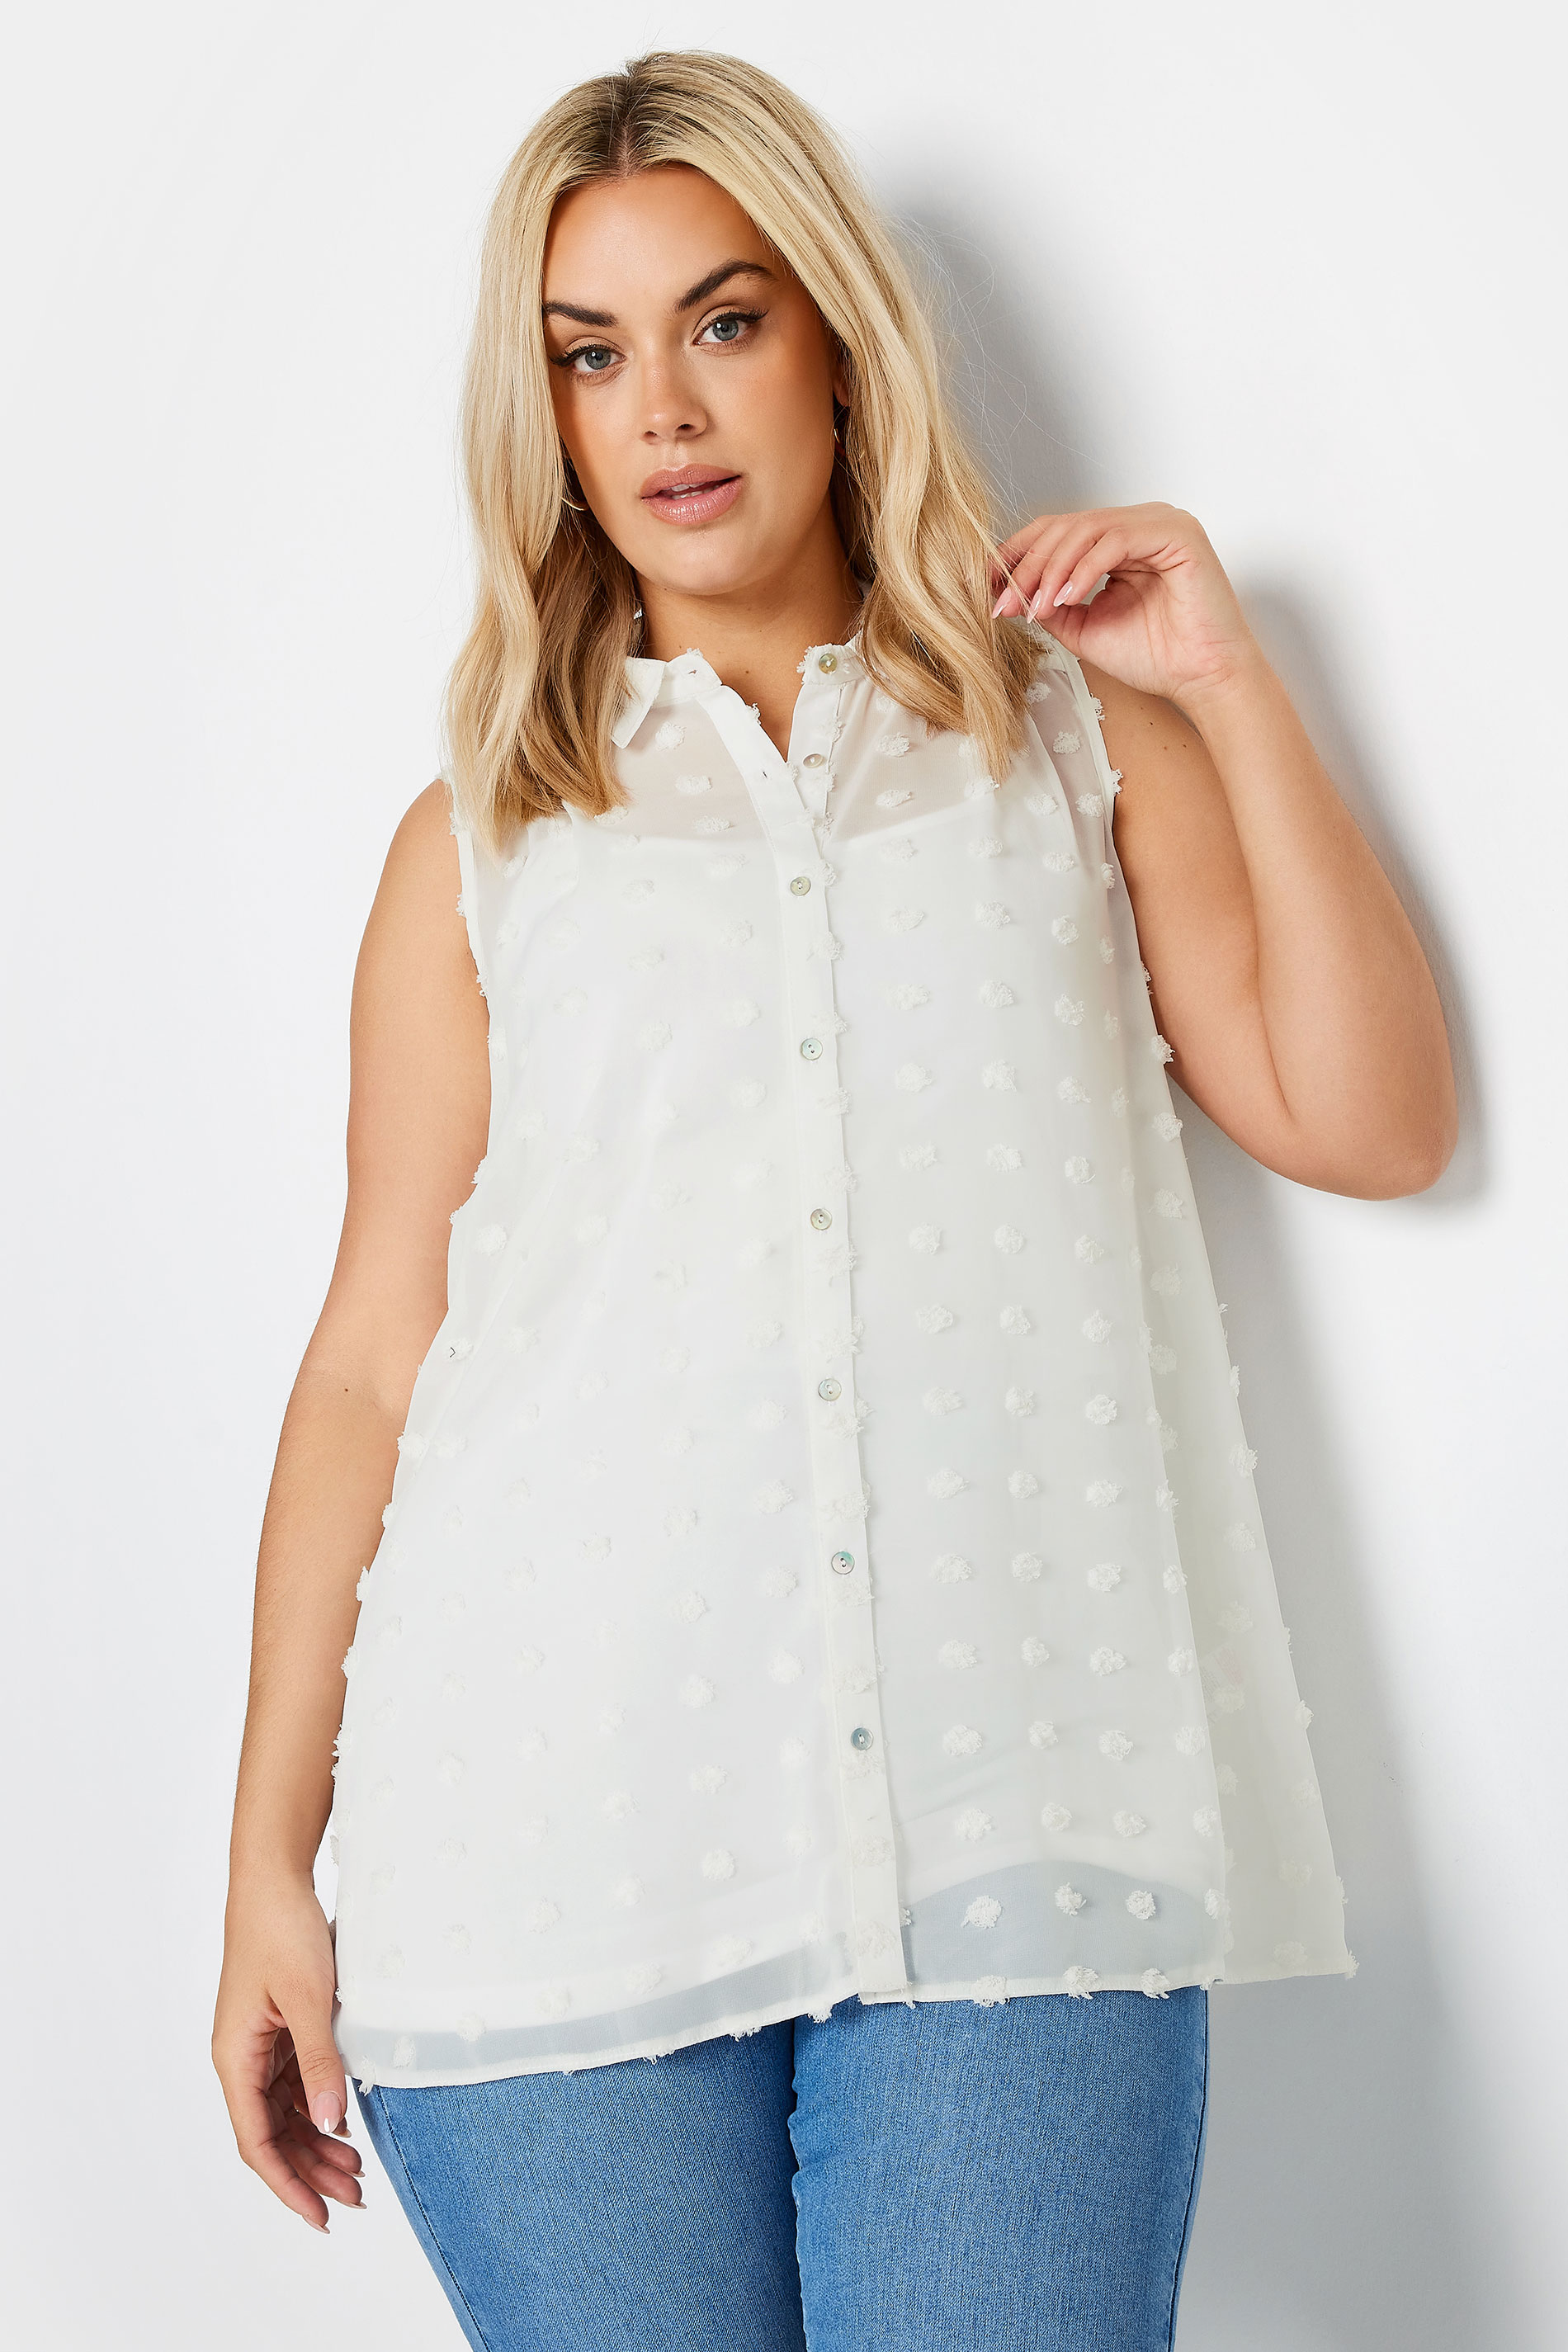 YOURS Plus Size White Sleeveless Shirt | Yours Clothing 1